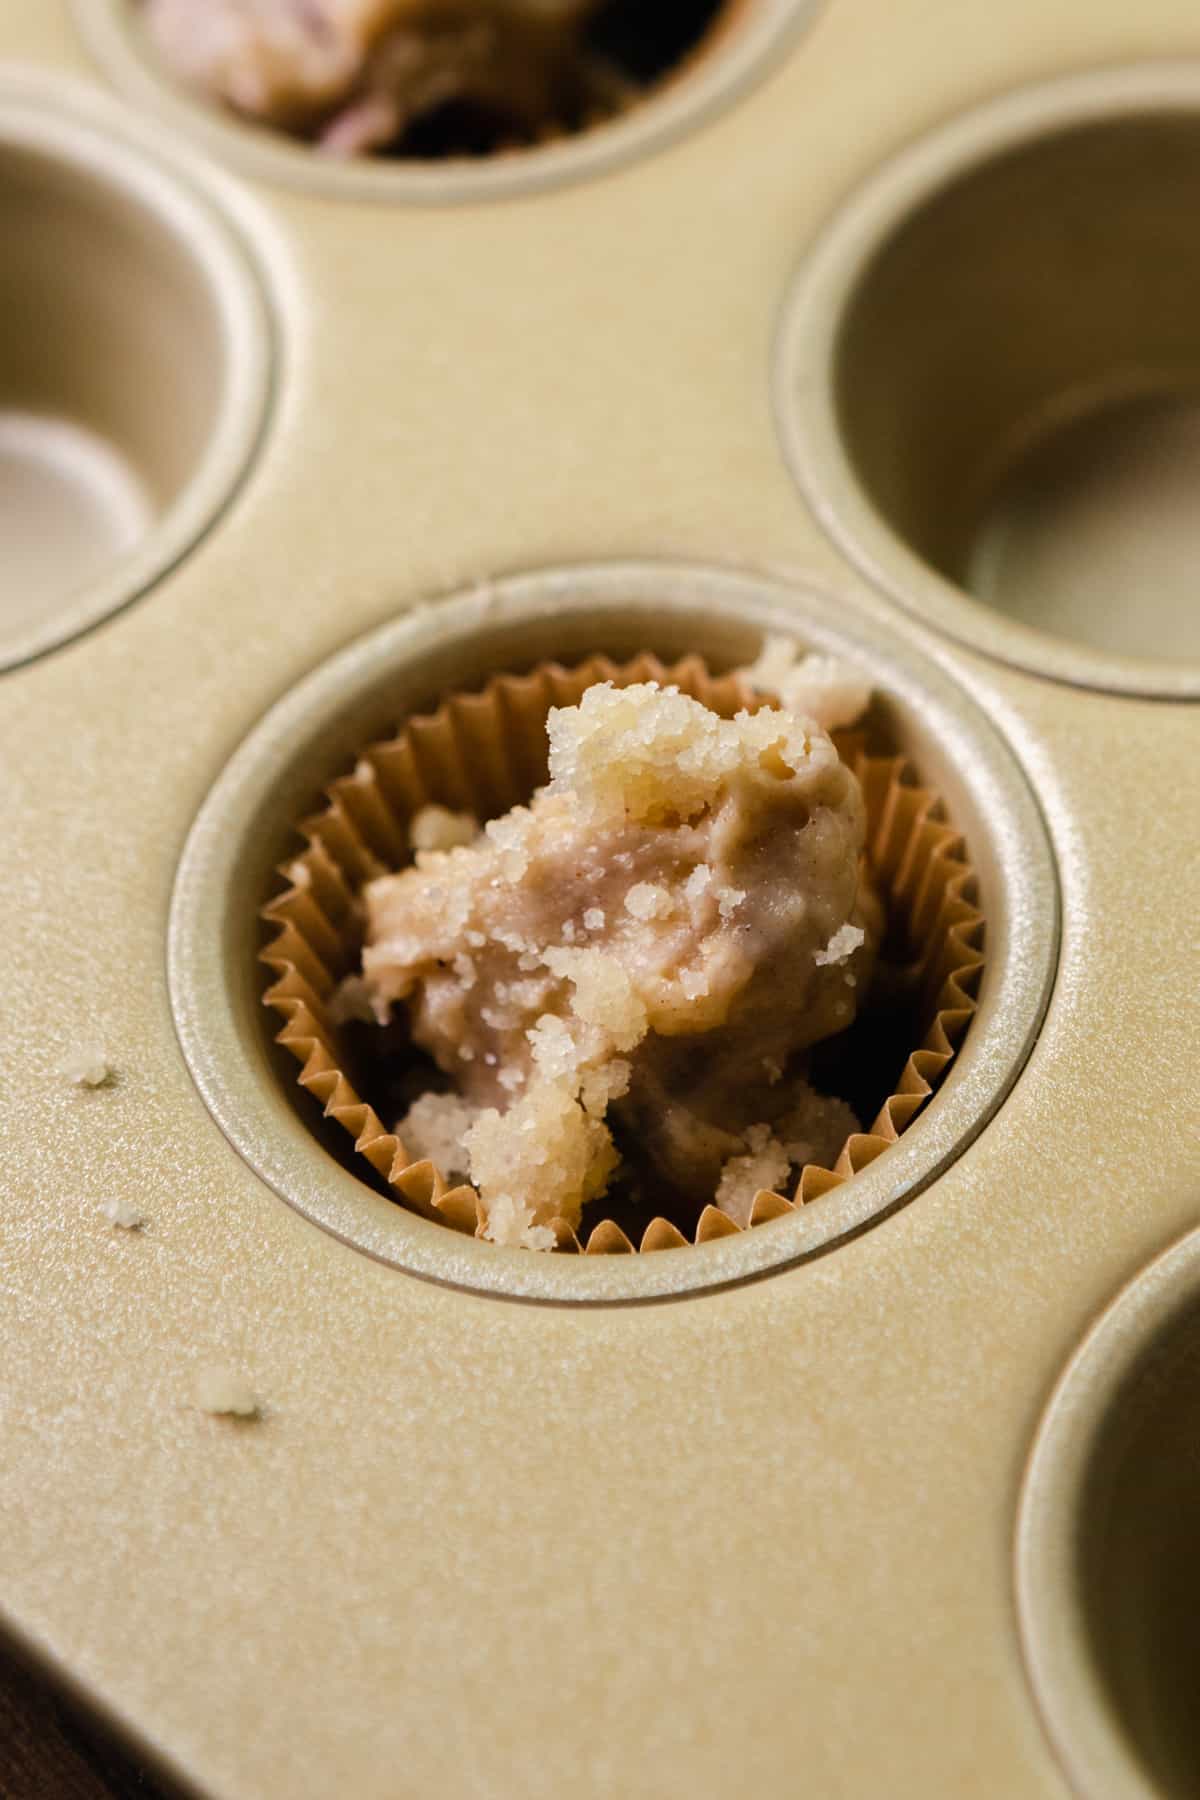 Muffin batter in a mini muffin pan.